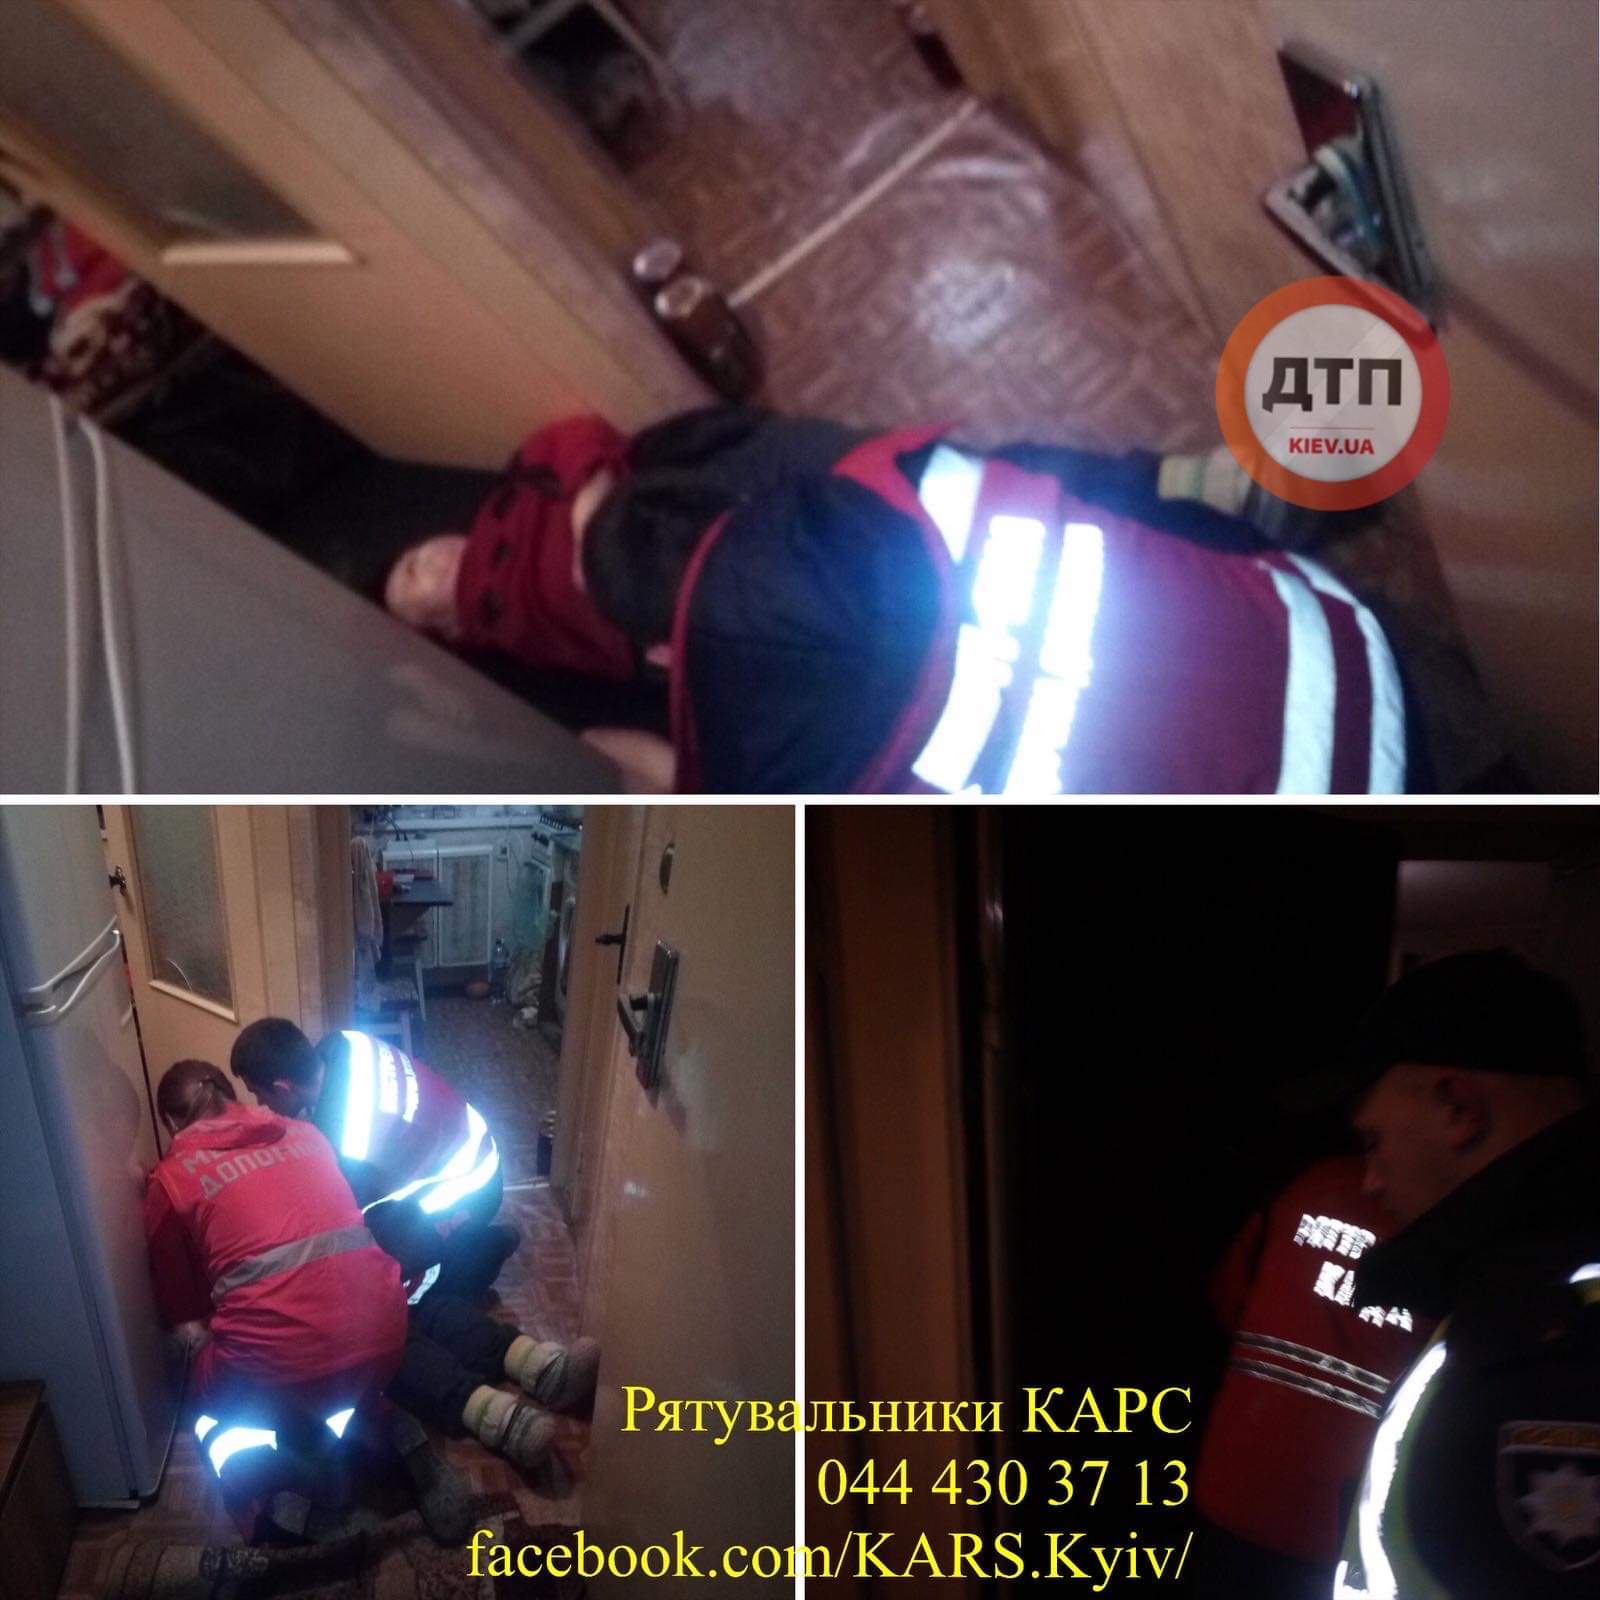 В Киеве спасатели КАРС вскрыли квартиру в которой находилась женщина в тяжелом состоянии